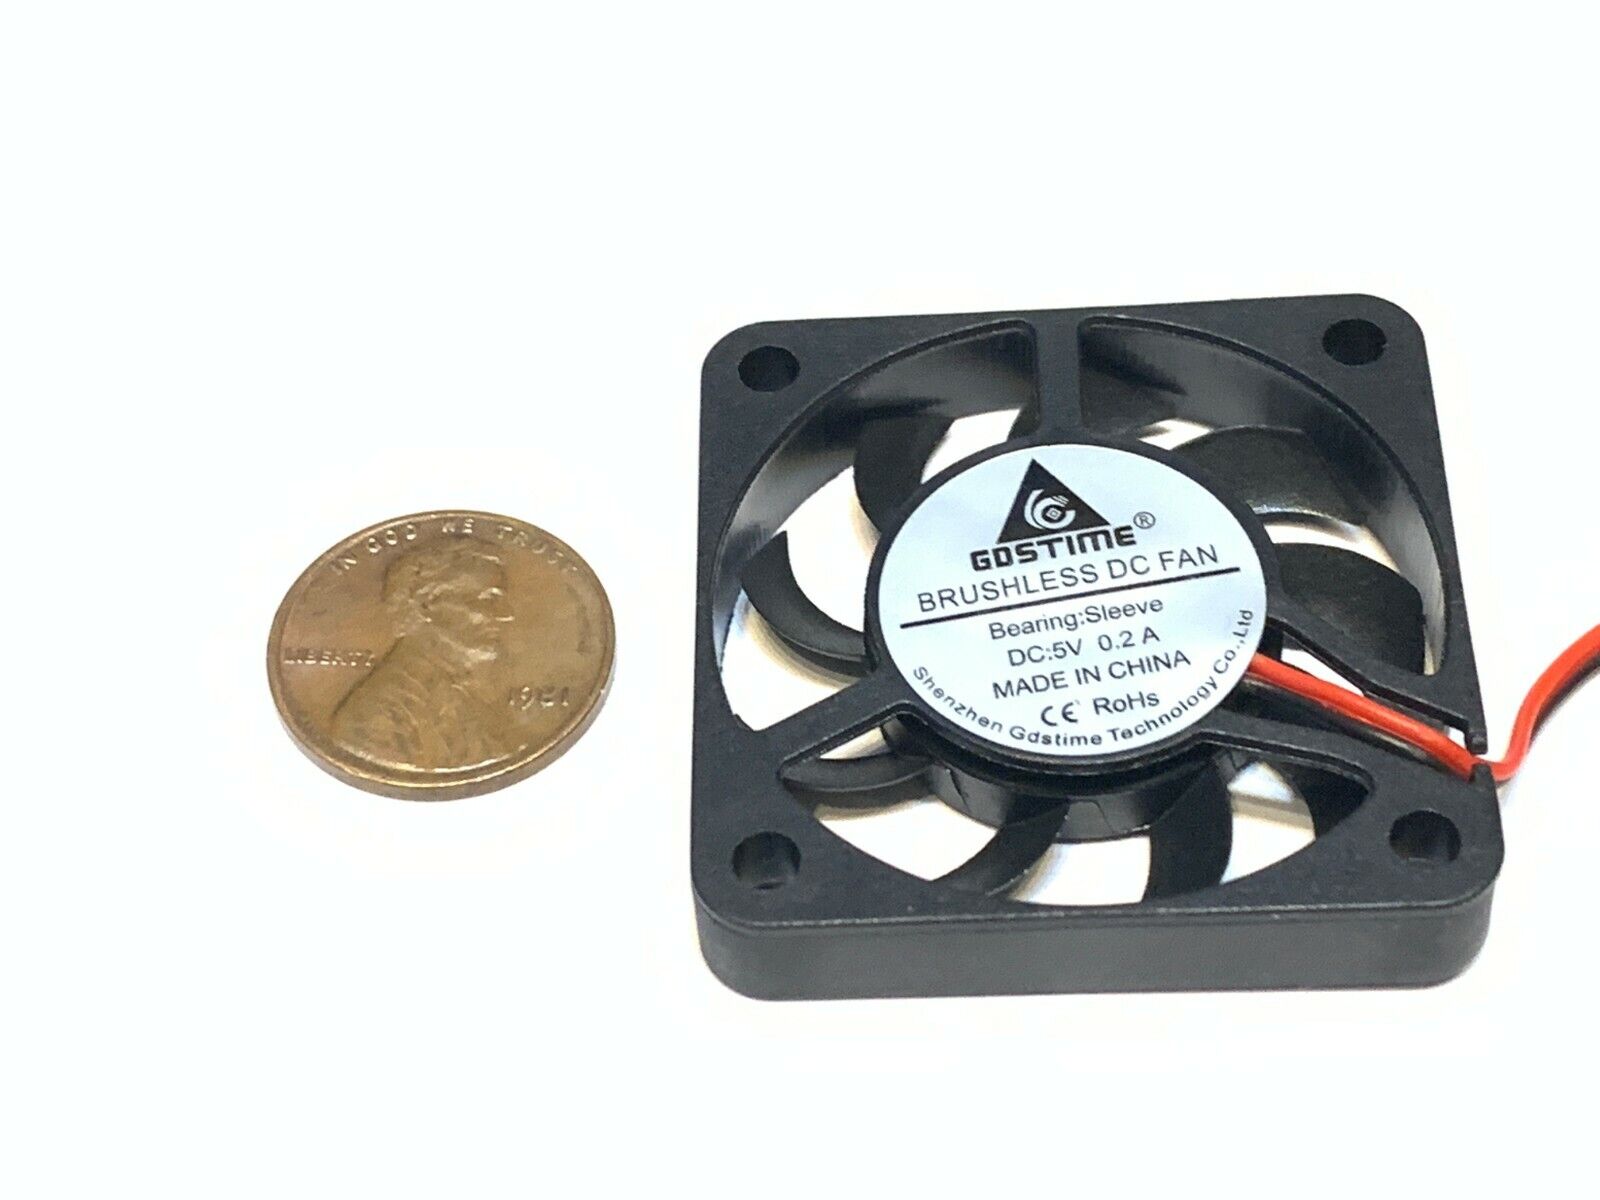 1 Piece Fan 5v 4007 4cm mini slim small quiet 7mm gdstime 2pin case heatsink